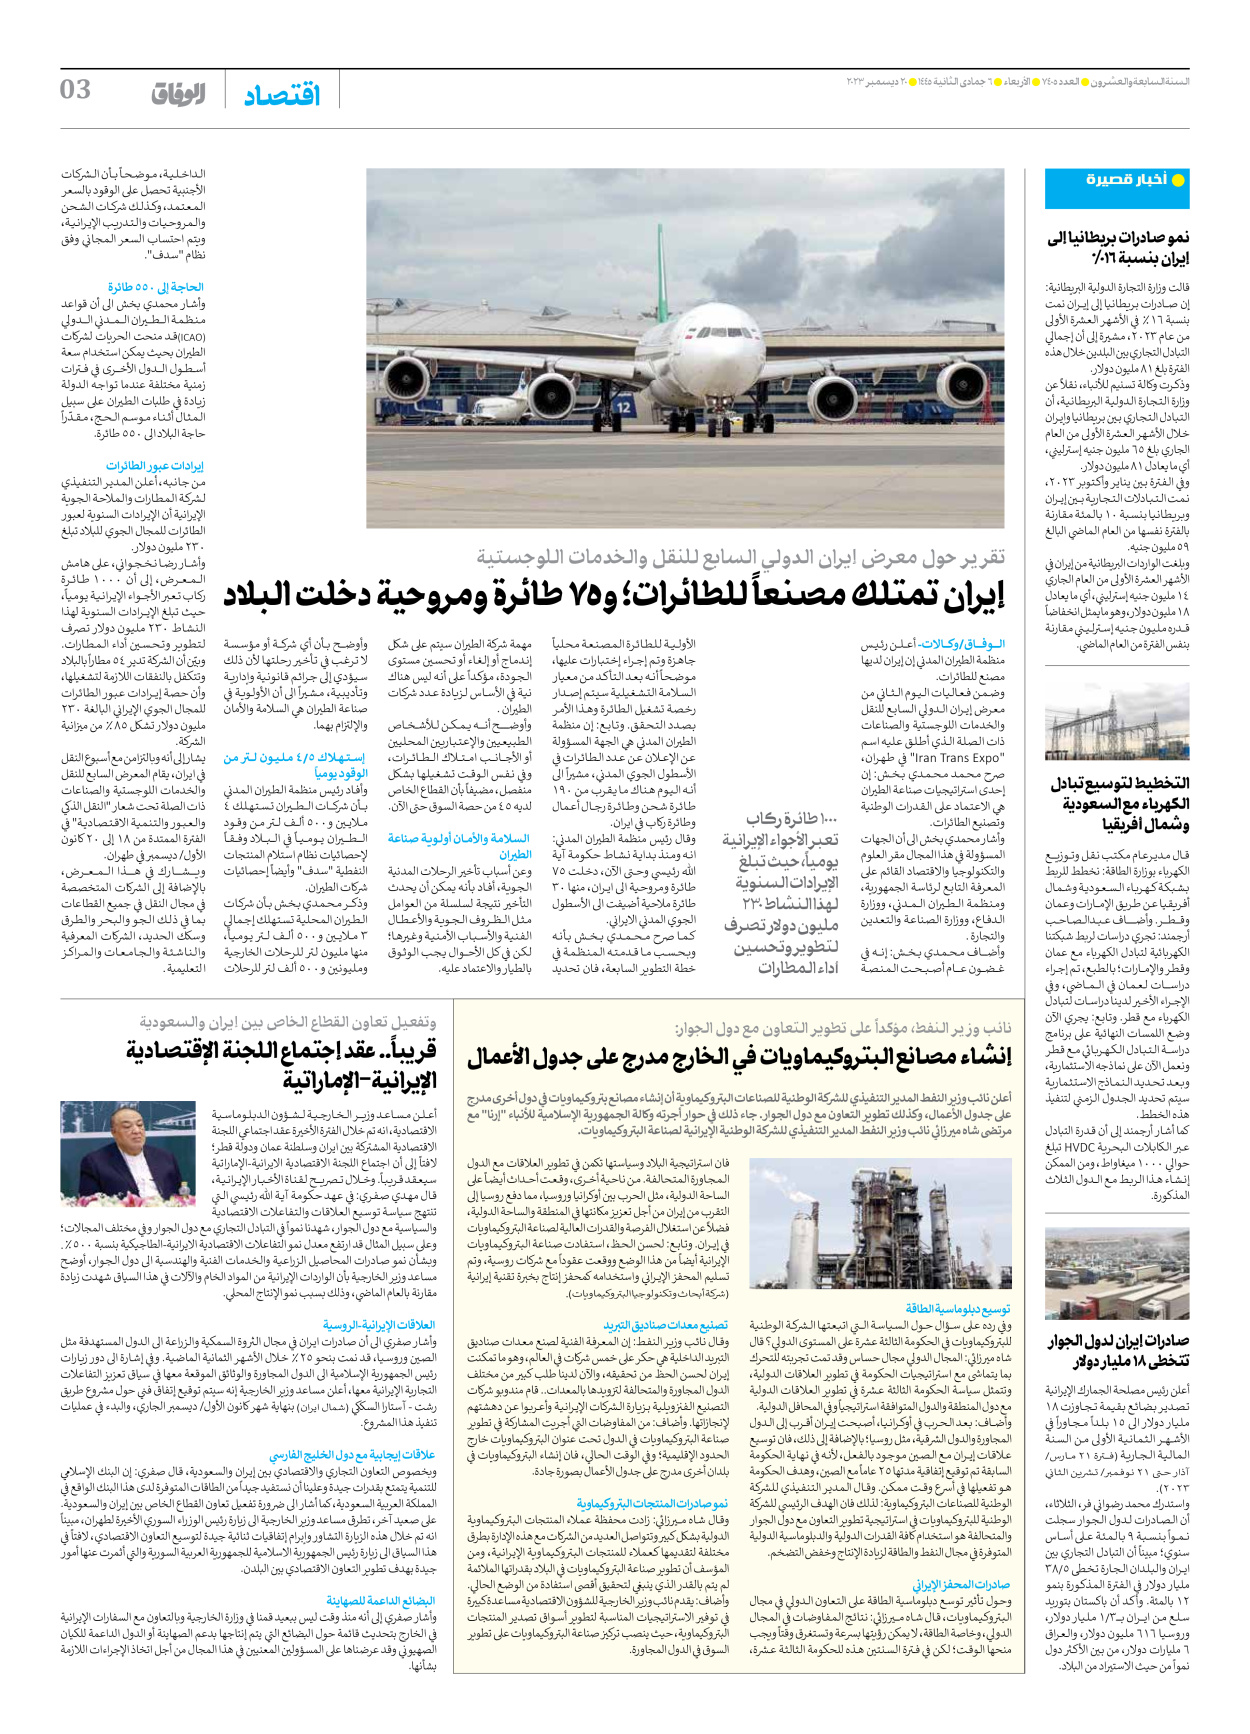 صحیفة ایران الدولیة الوفاق - العدد سبعة آلاف وأربعمائة وخمسة - ٢٠ ديسمبر ٢٠٢٣ - الصفحة ۳